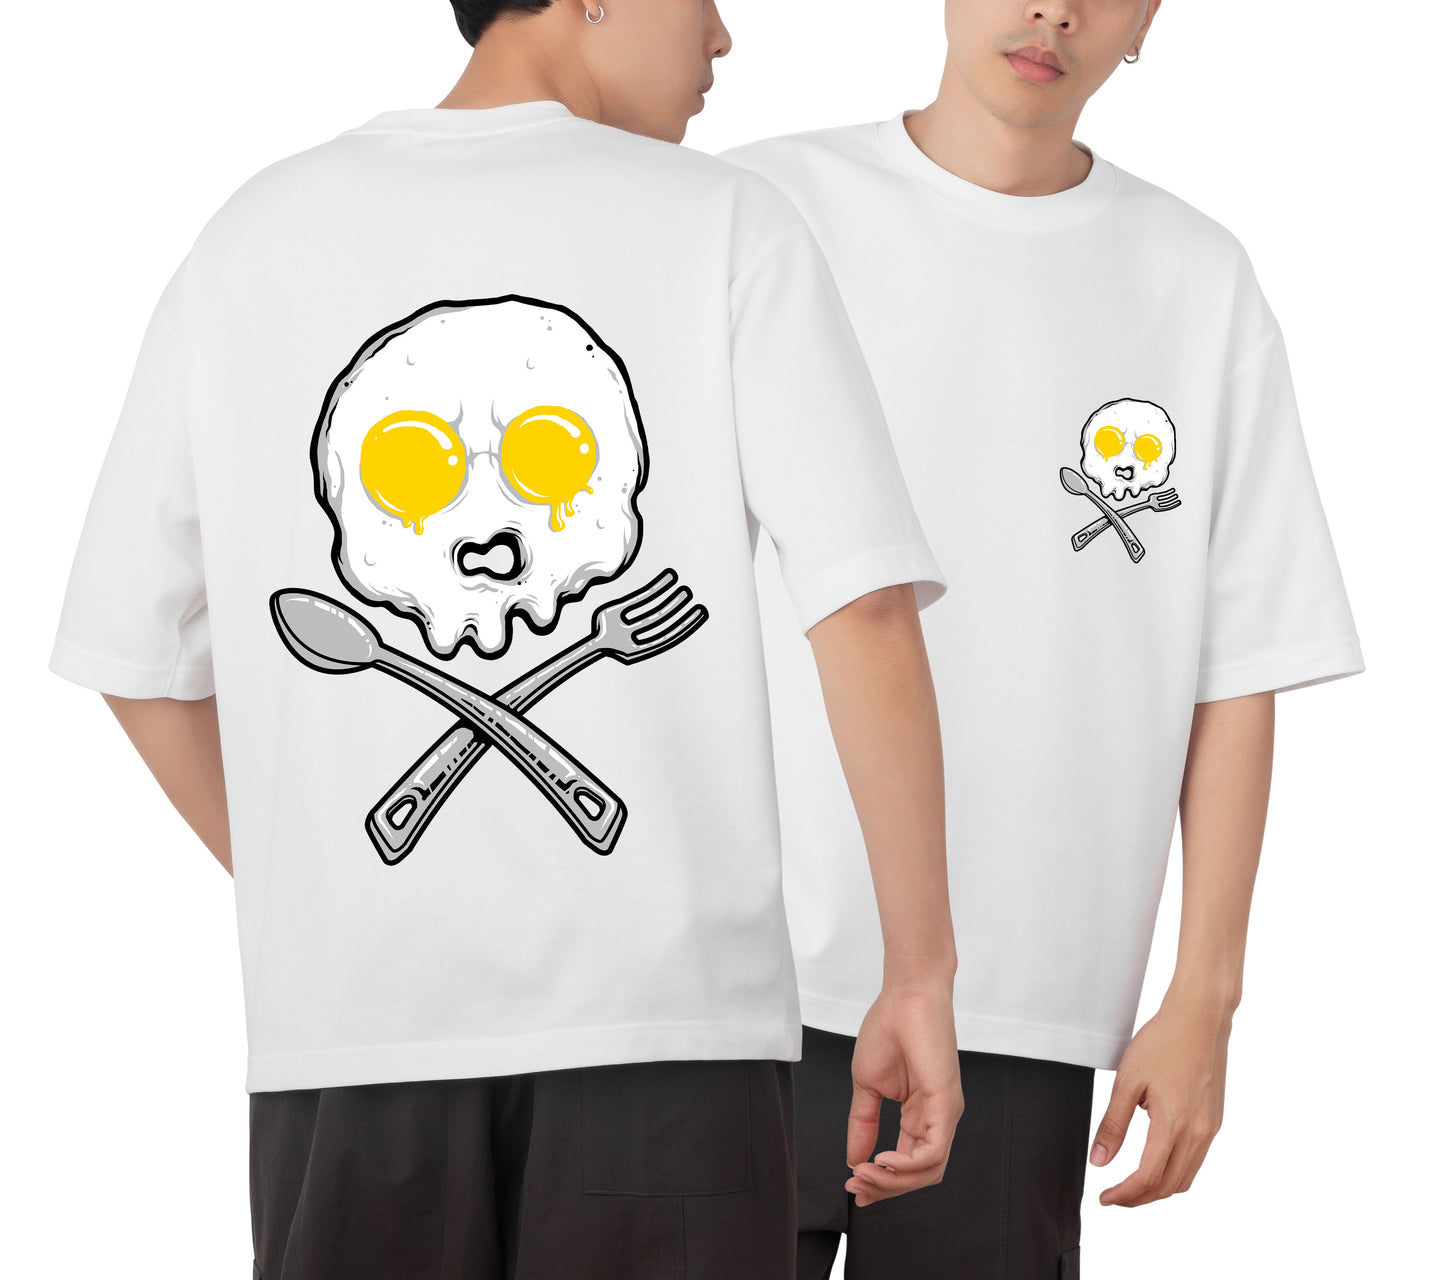 Skull Omelet Graphic Printed  Unisex Oversized T-shirt D054